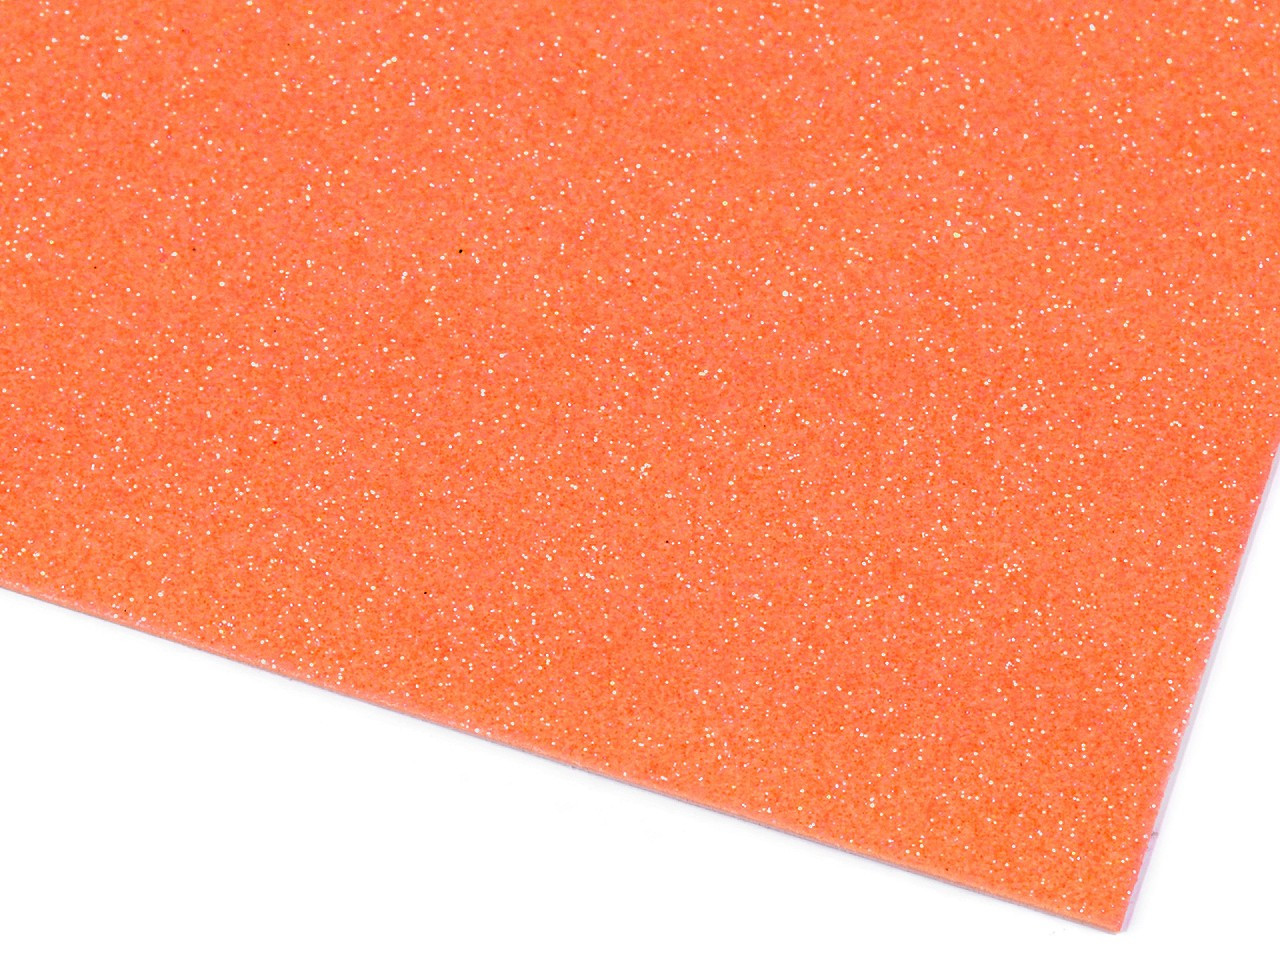 Samolepicí pěnová guma Moosgummi s glitry 20x30 cm, barva 17 oranžová dýňová